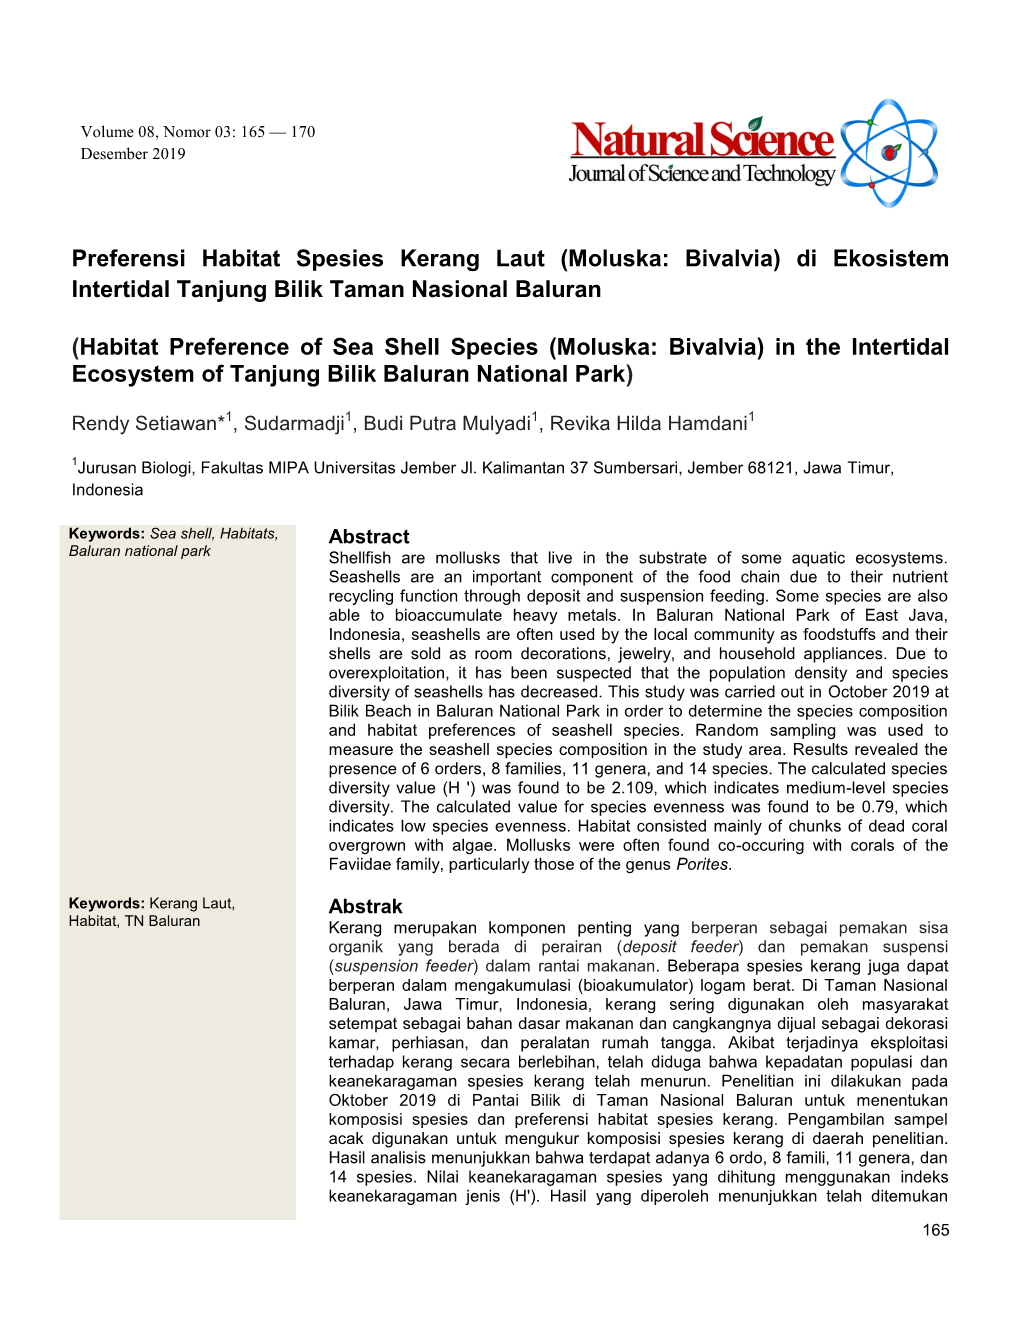 Preferensi Habitat Spesies Kerang Laut (Moluska: Bivalvia) Di Ekosistem Intertidal Tanjung Bilik Taman Nasional Baluran